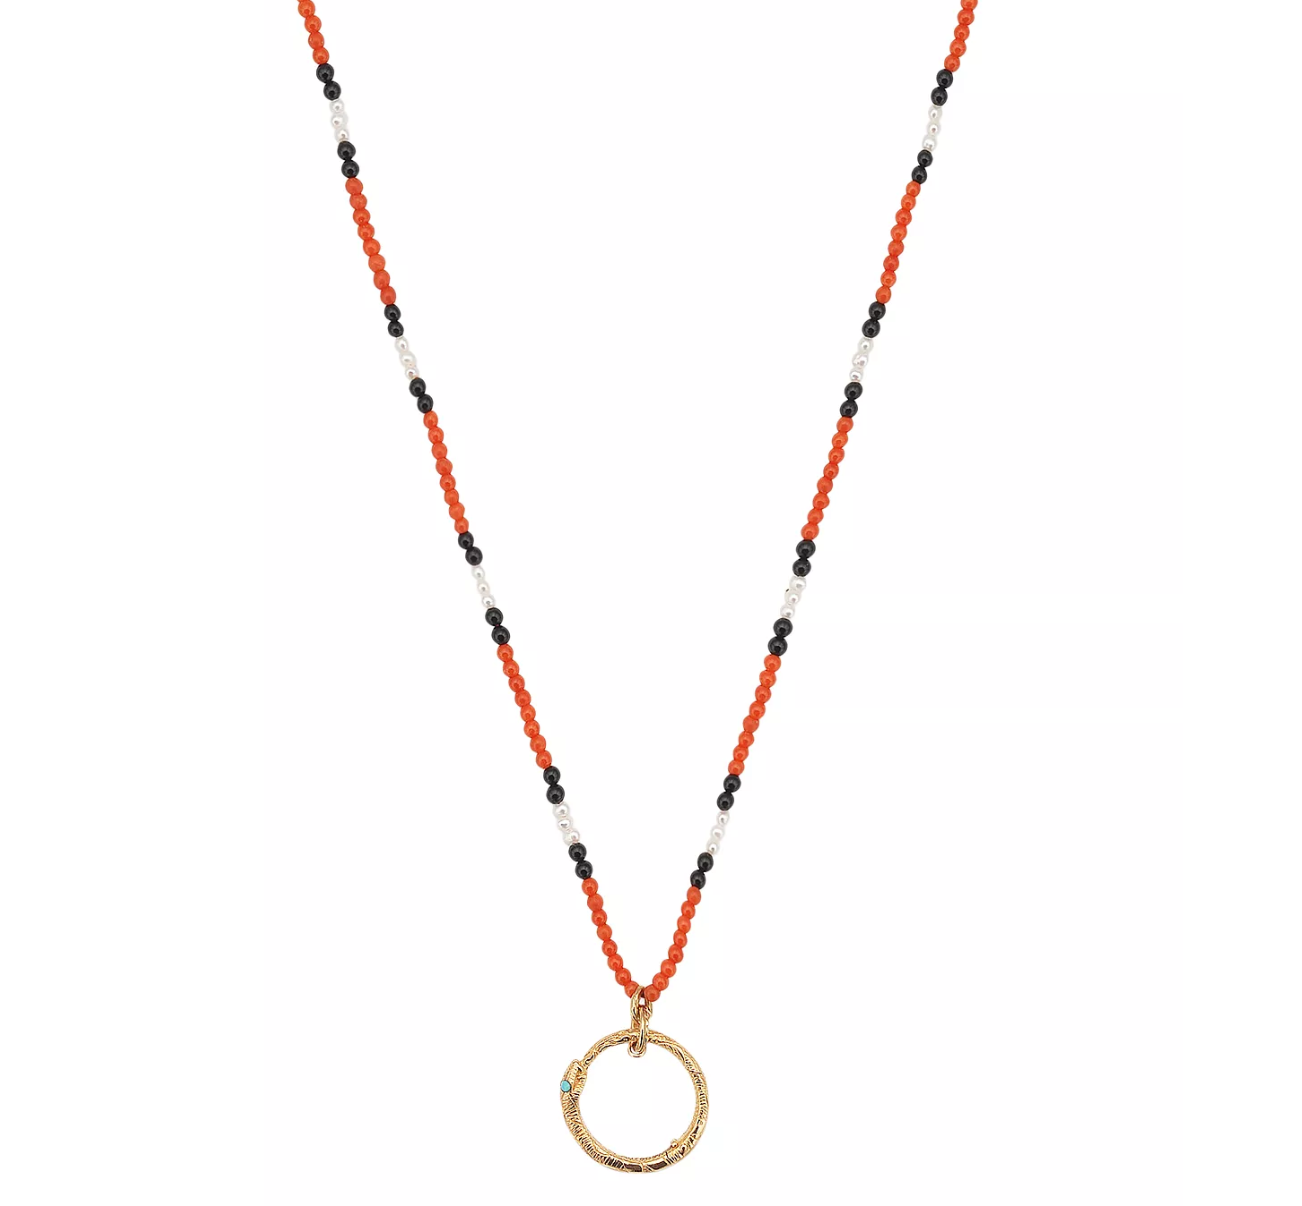 ouroboros necklace gucci